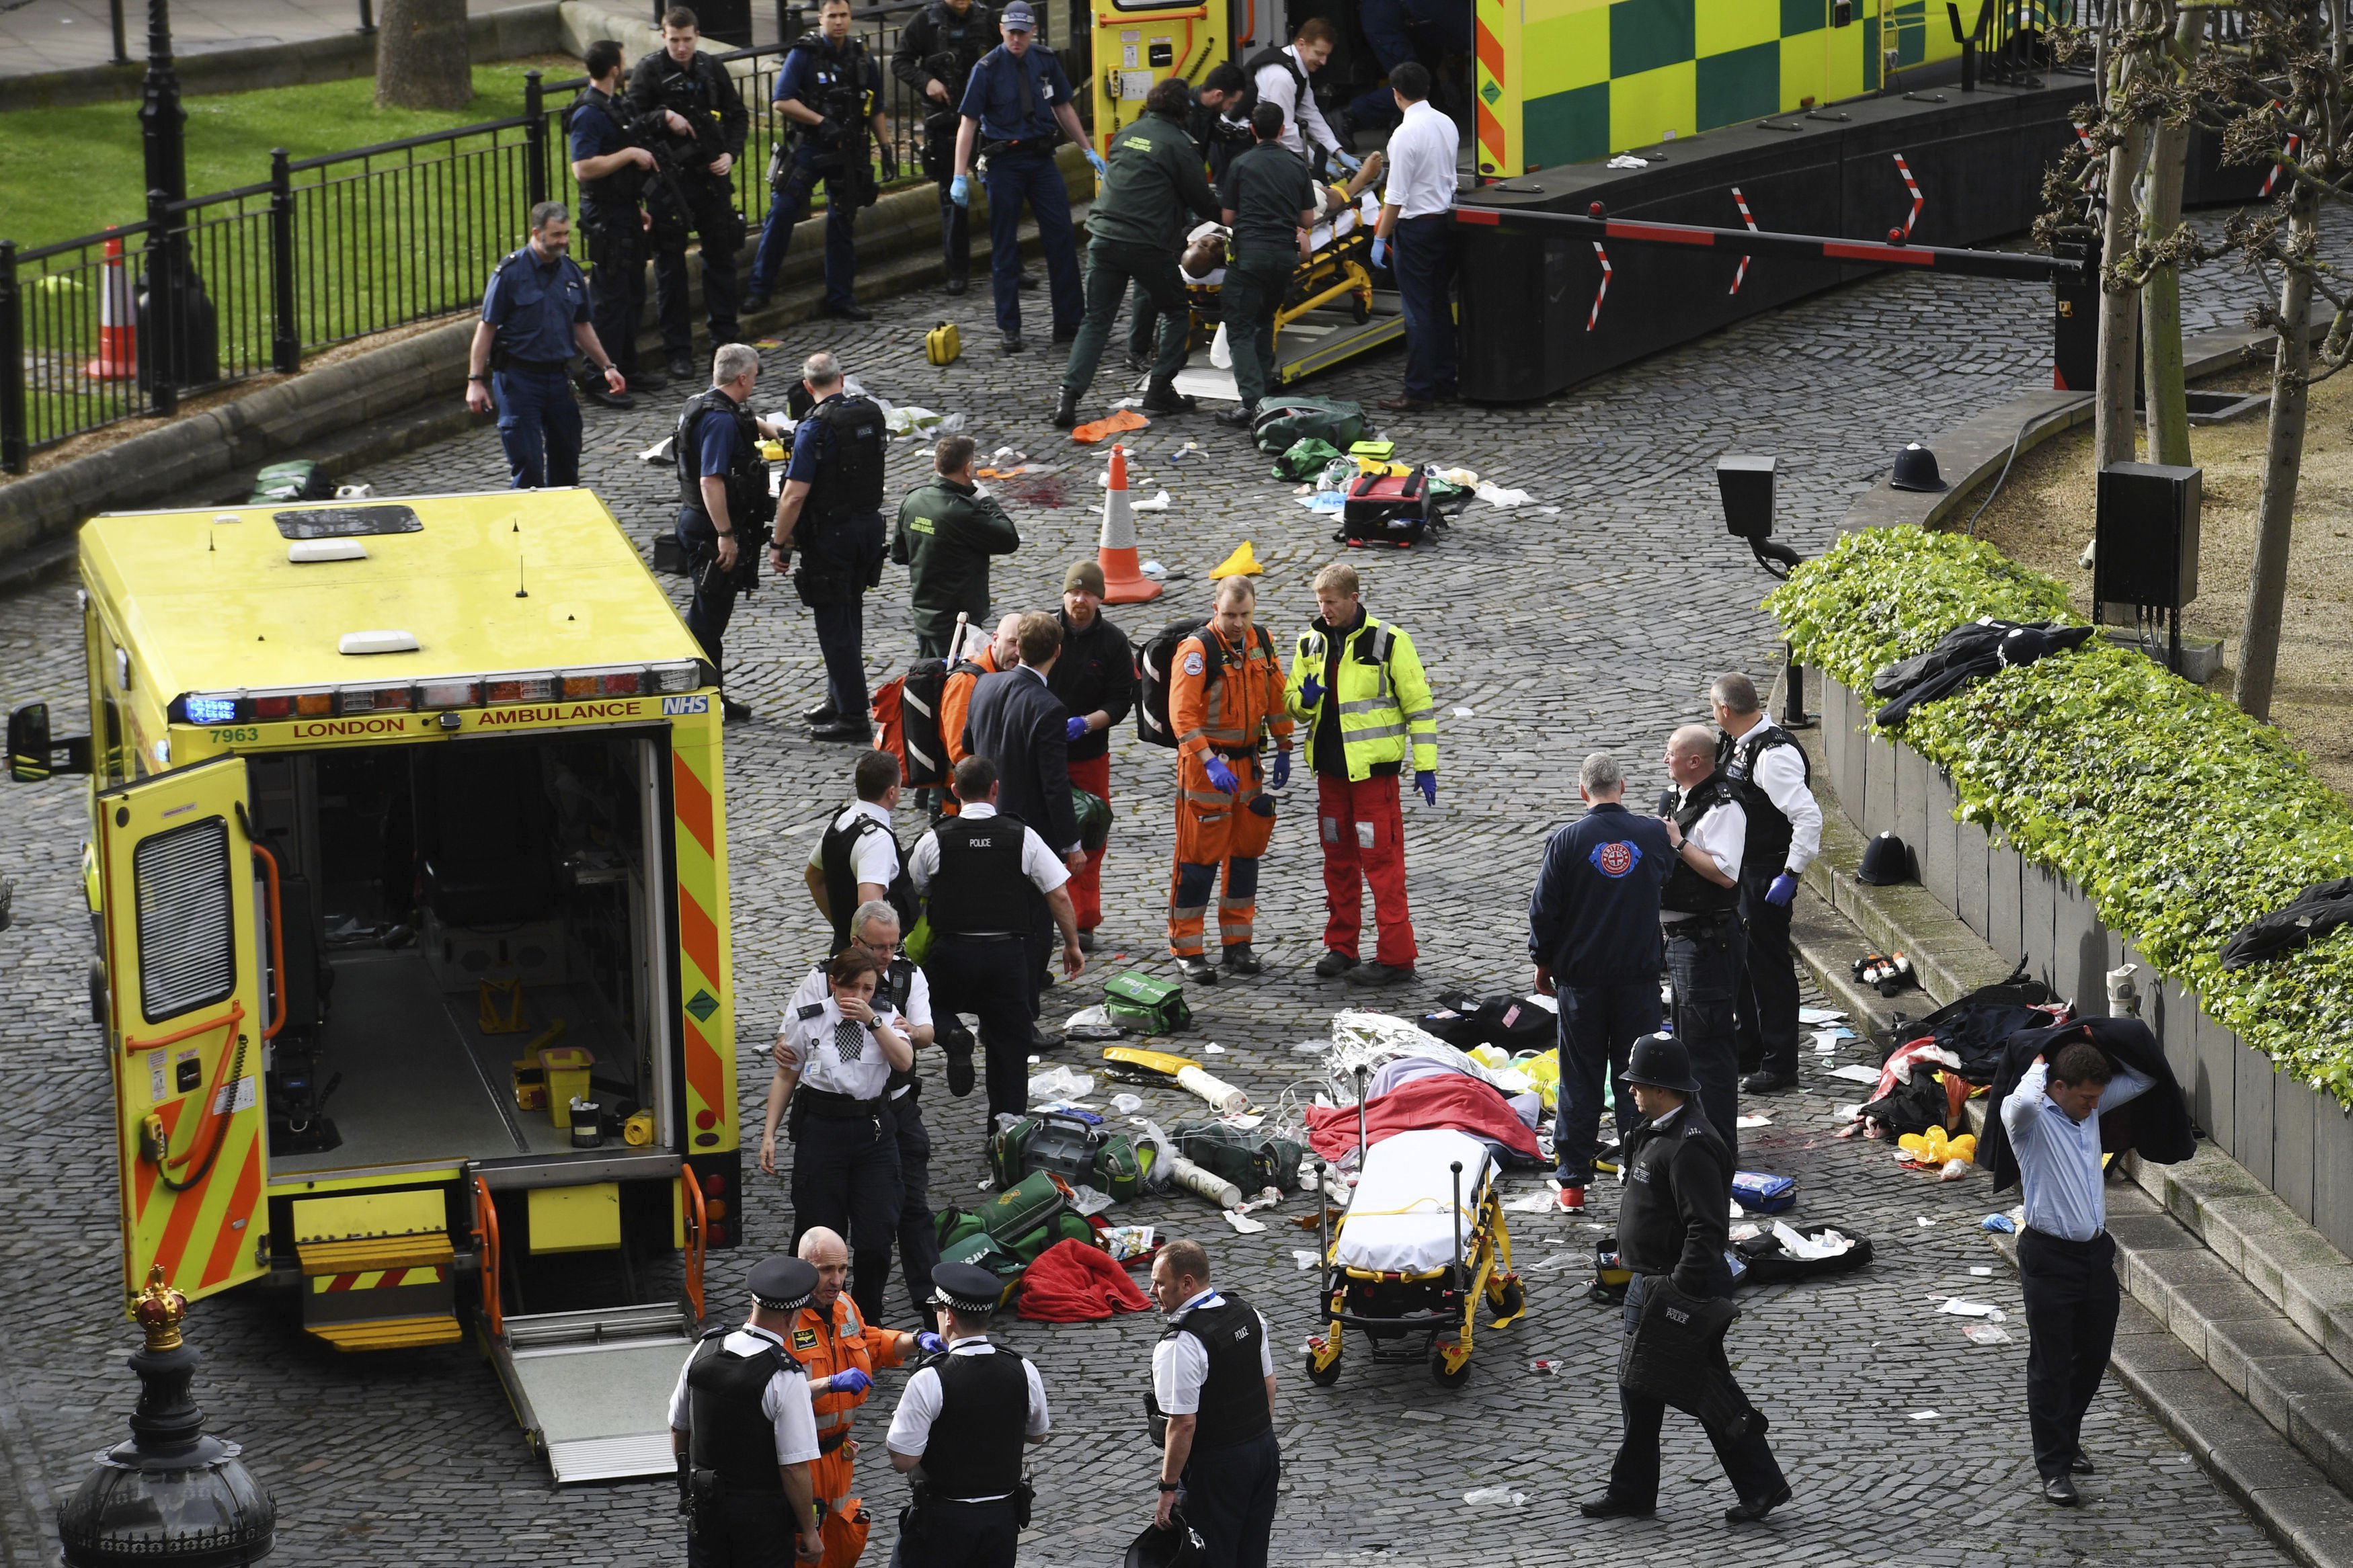 Фото после теракта. Теракт на Вестминстерском мосту в Лондоне (2017). Теракт в Лондоне (2017, июнь).